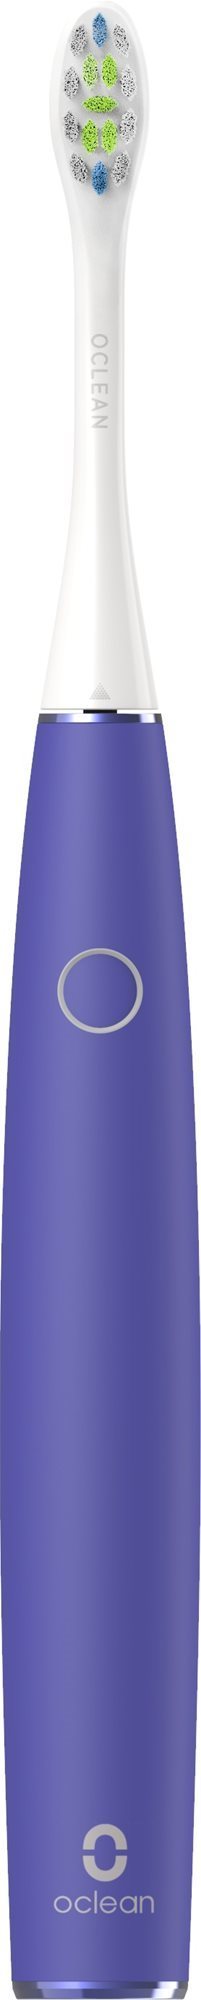 Oclean Air2 Purple